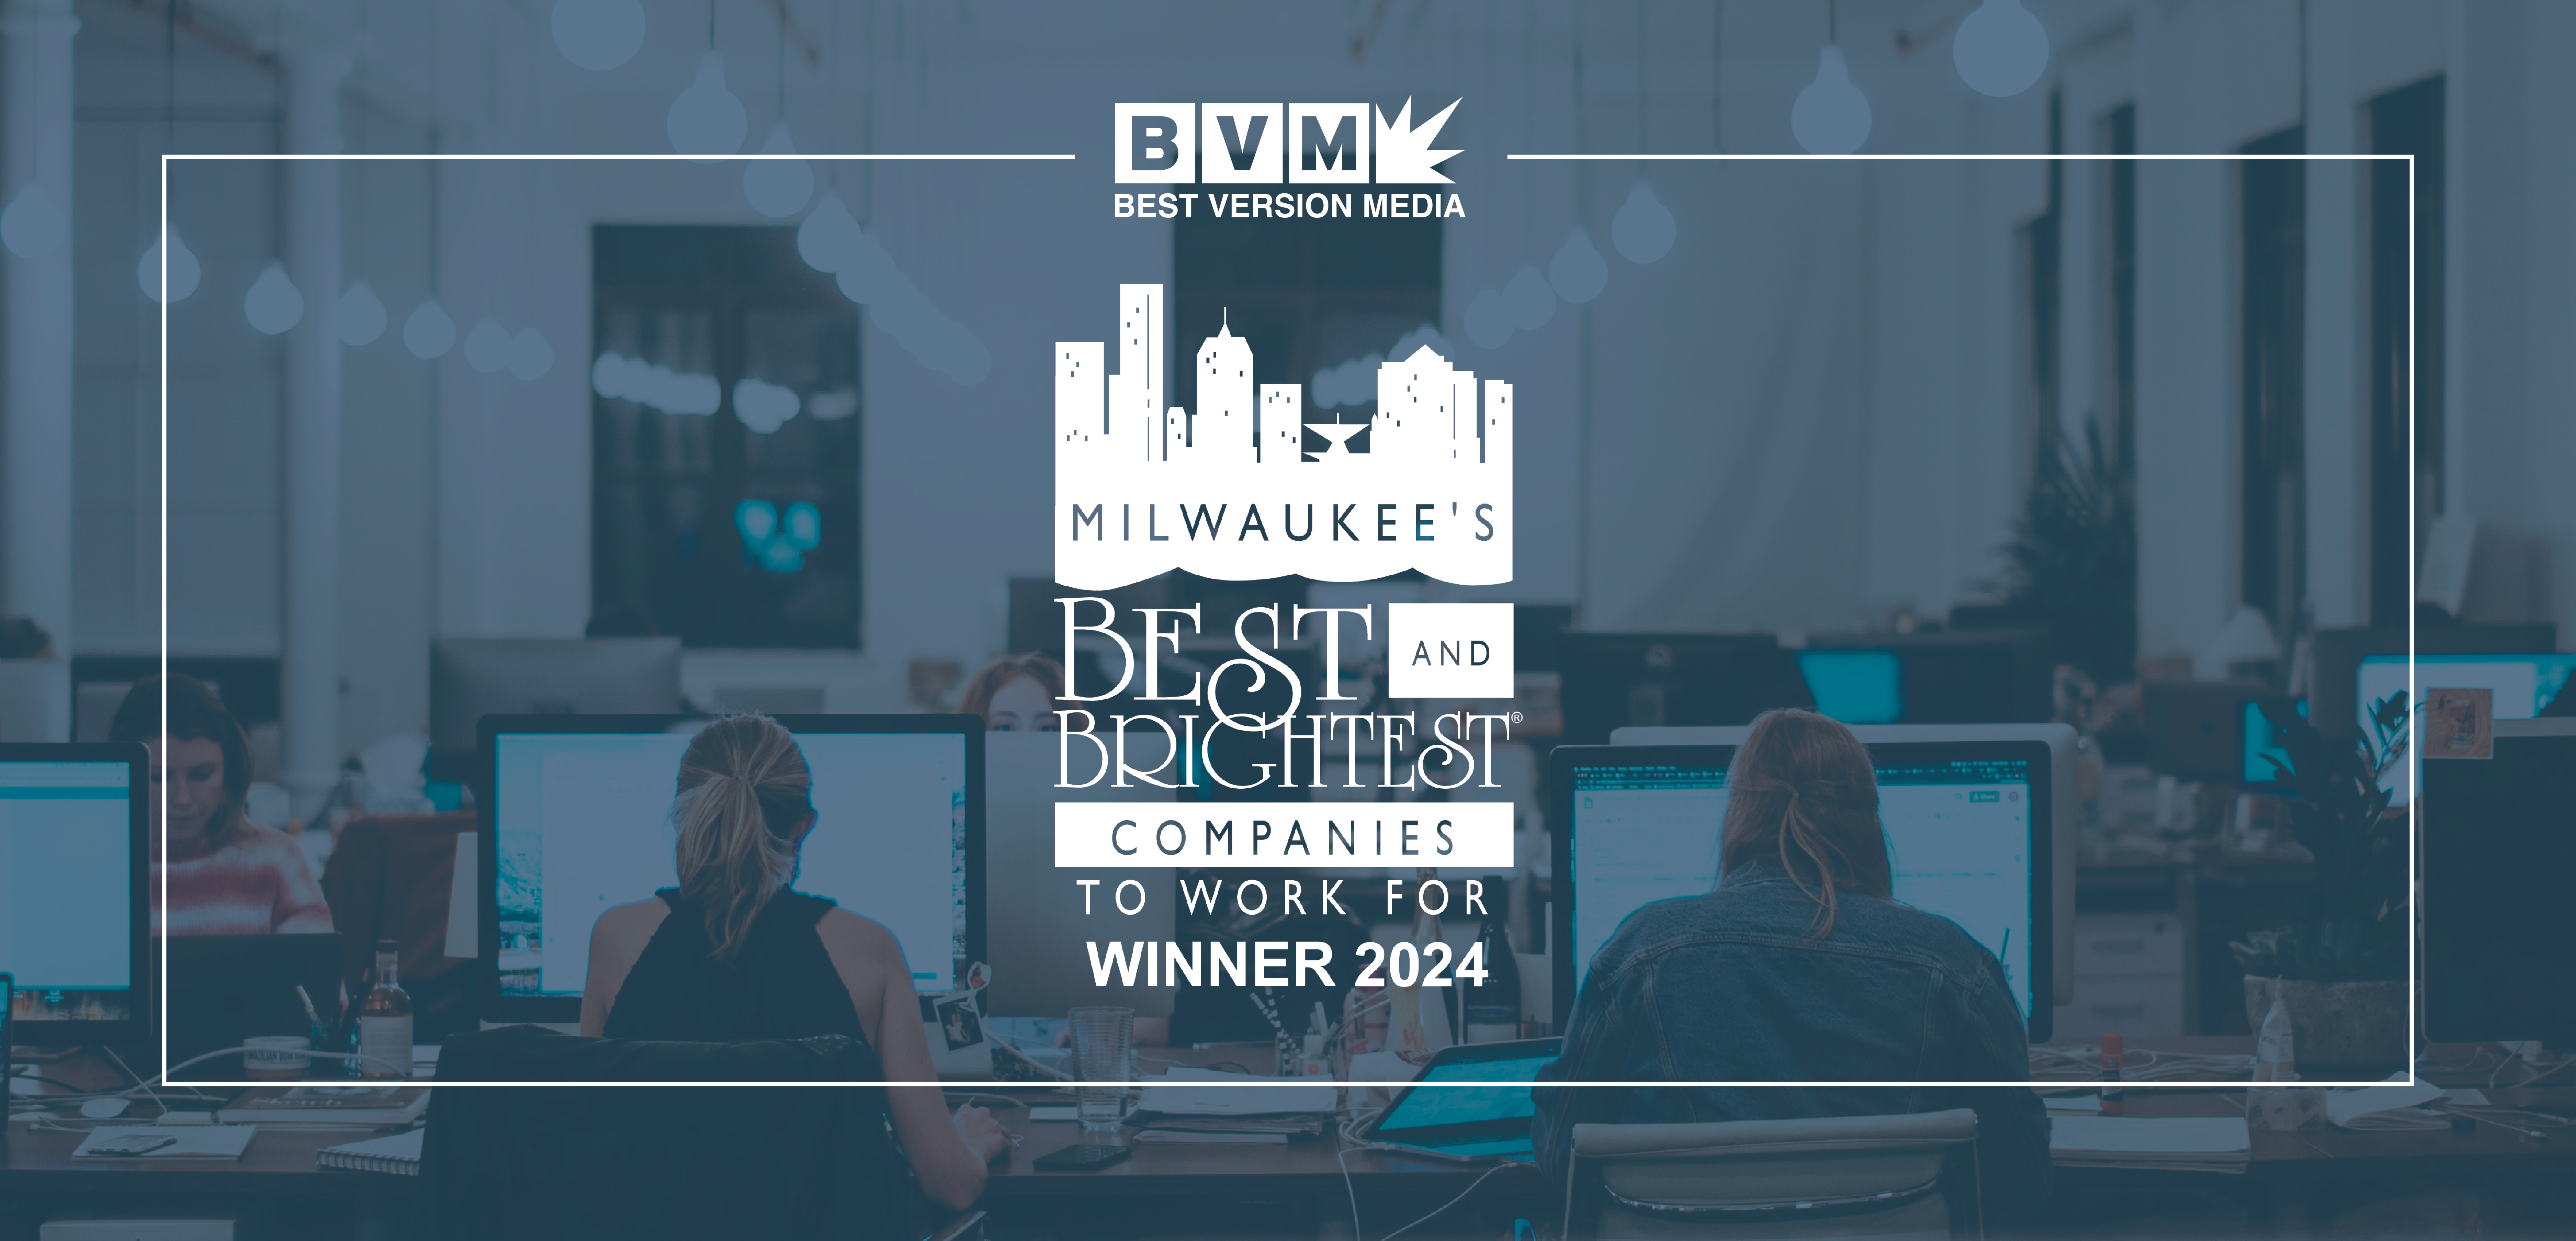 BVM-Best-Brightest-Milwaukee